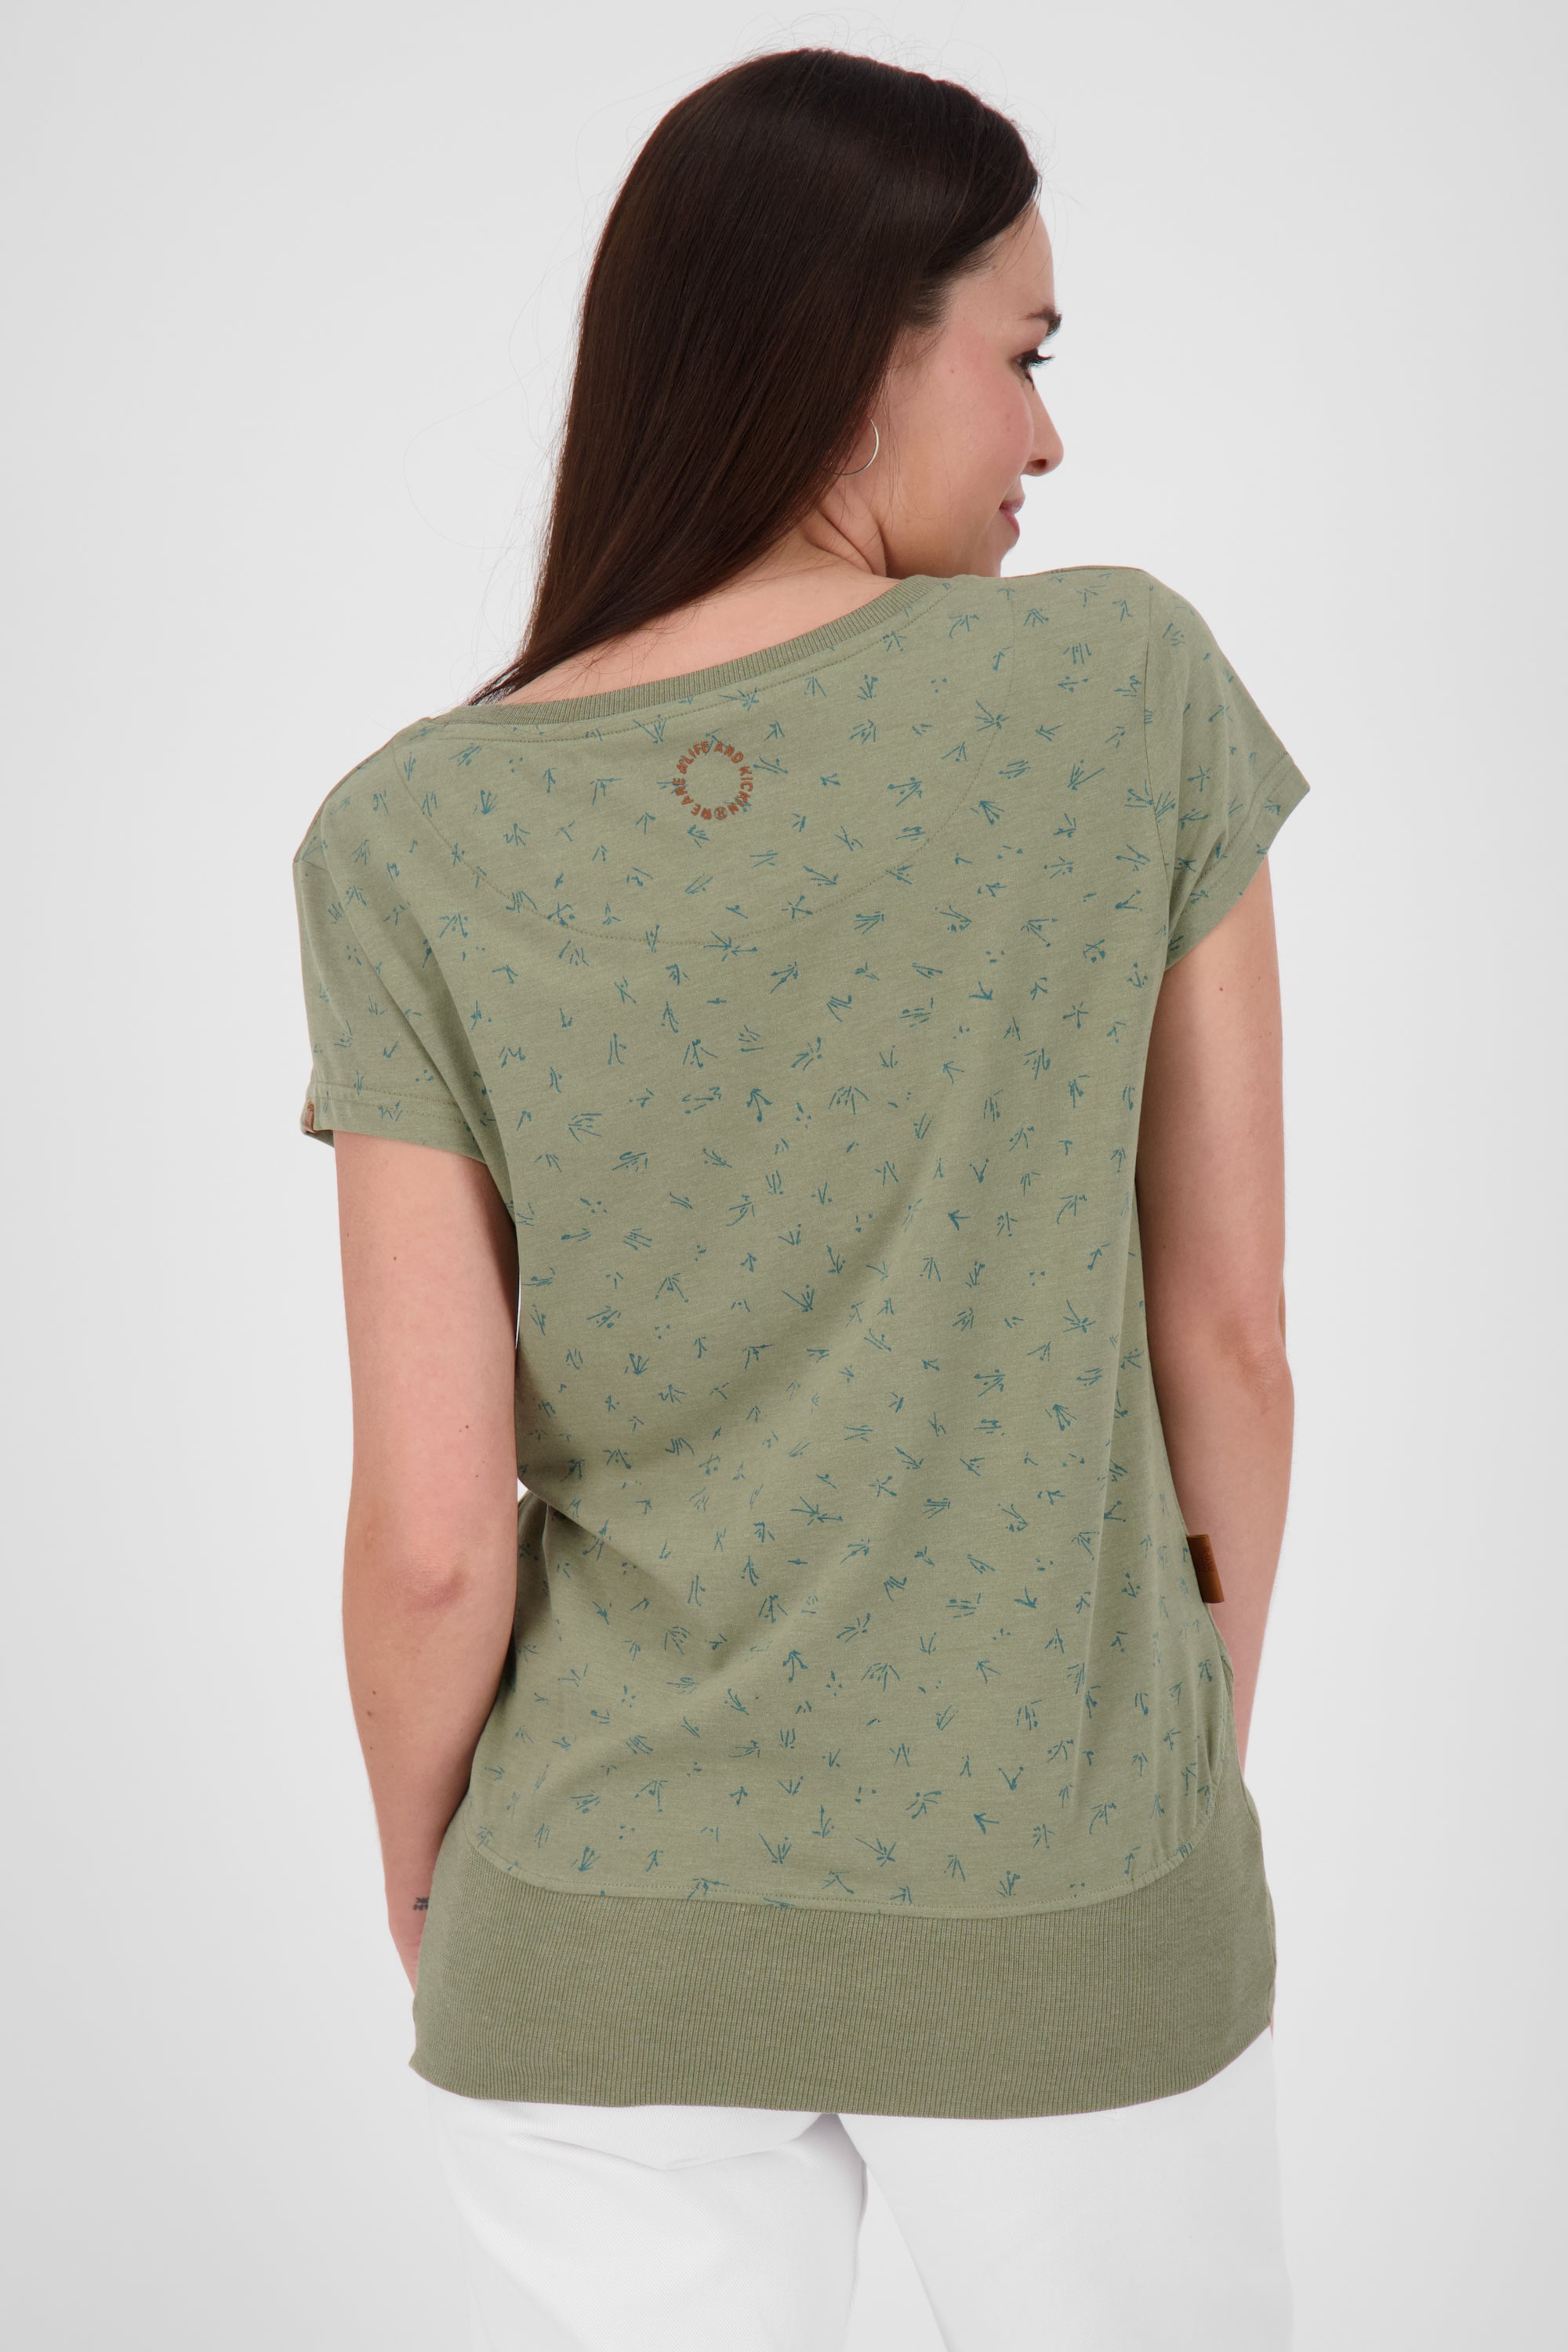 Feminines Kurzarmshirt CocoAK B für stylische Frauen Grün